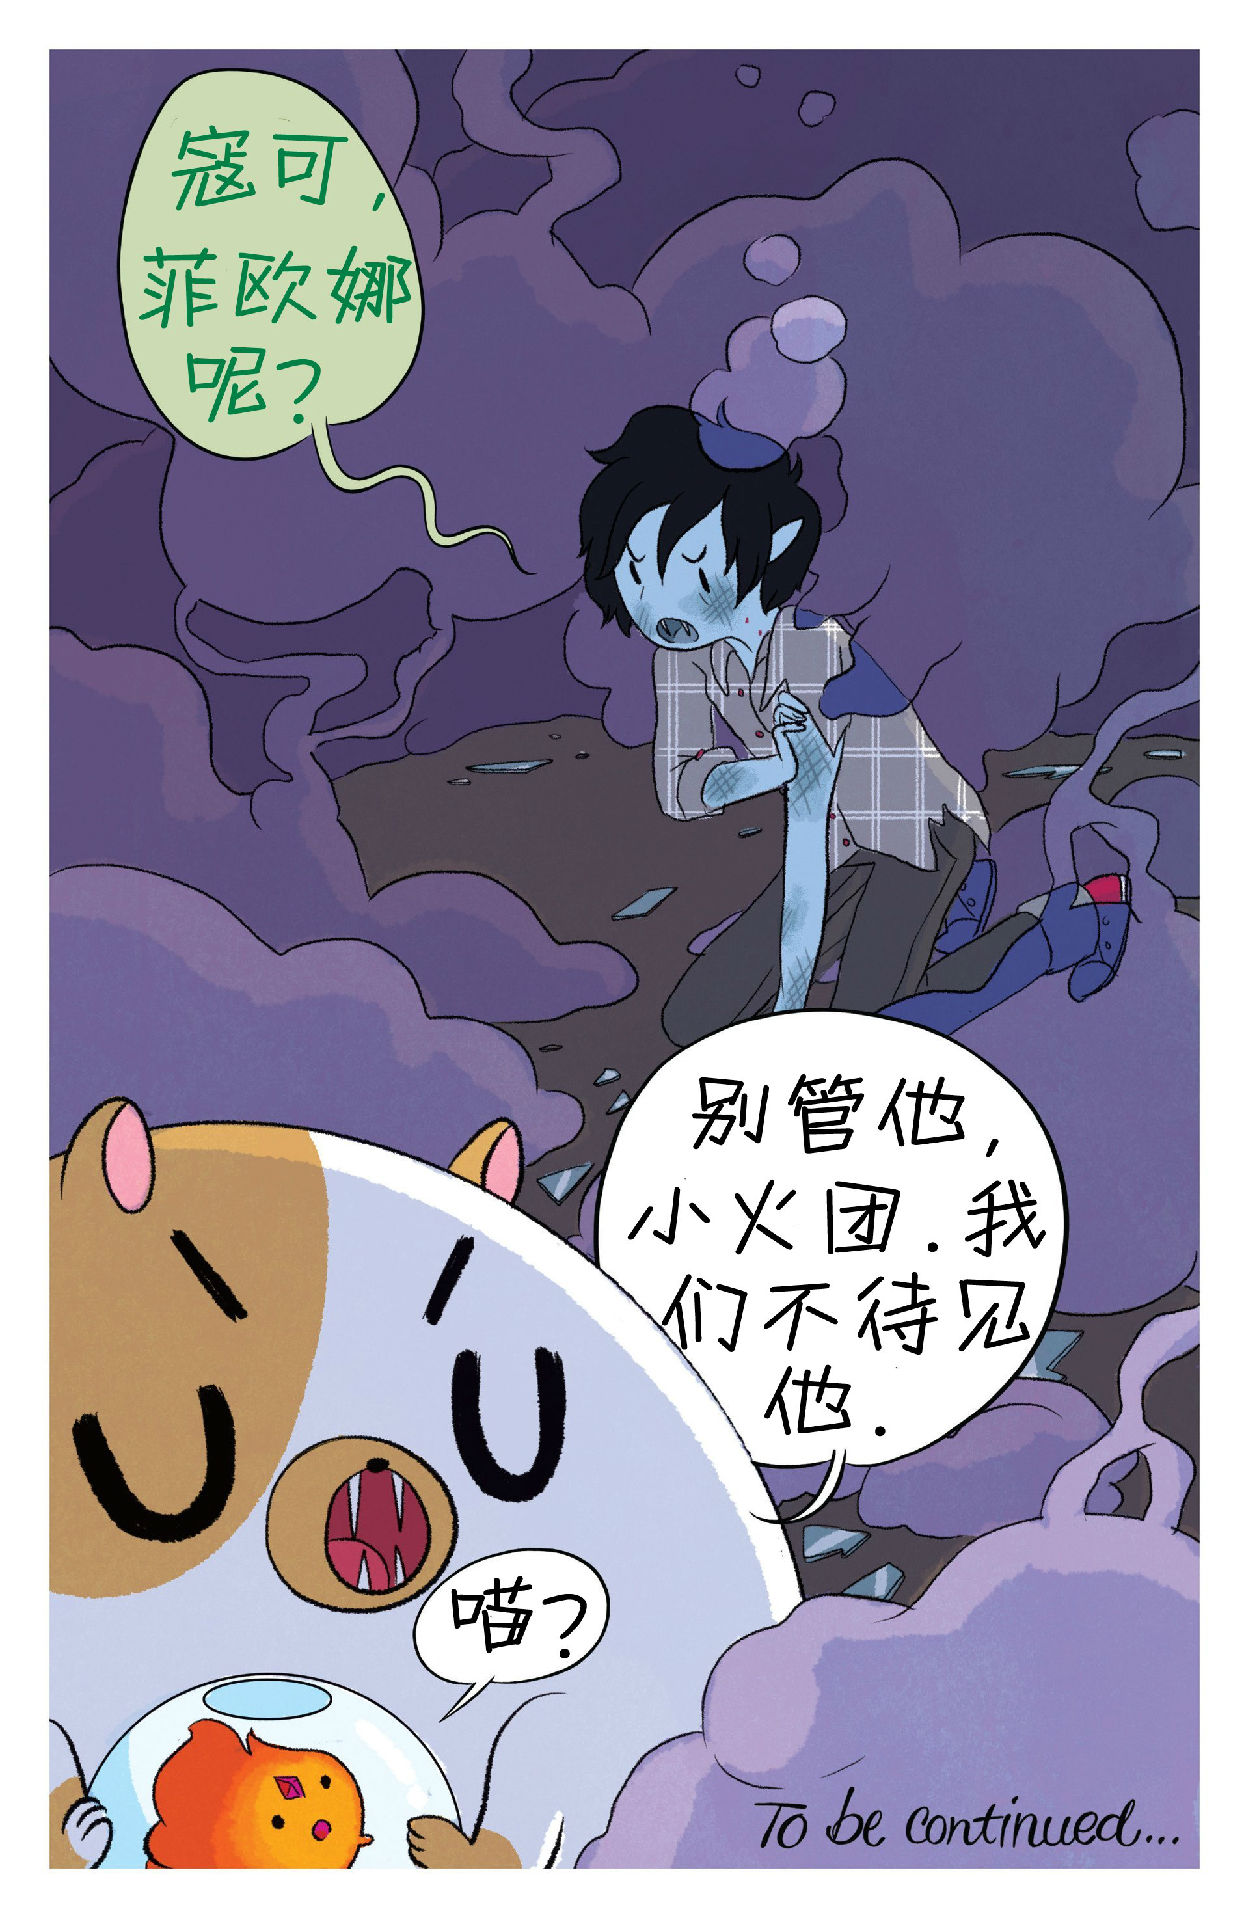 【漫画】adventuretime菲欧娜和寇可的冒险时光#2